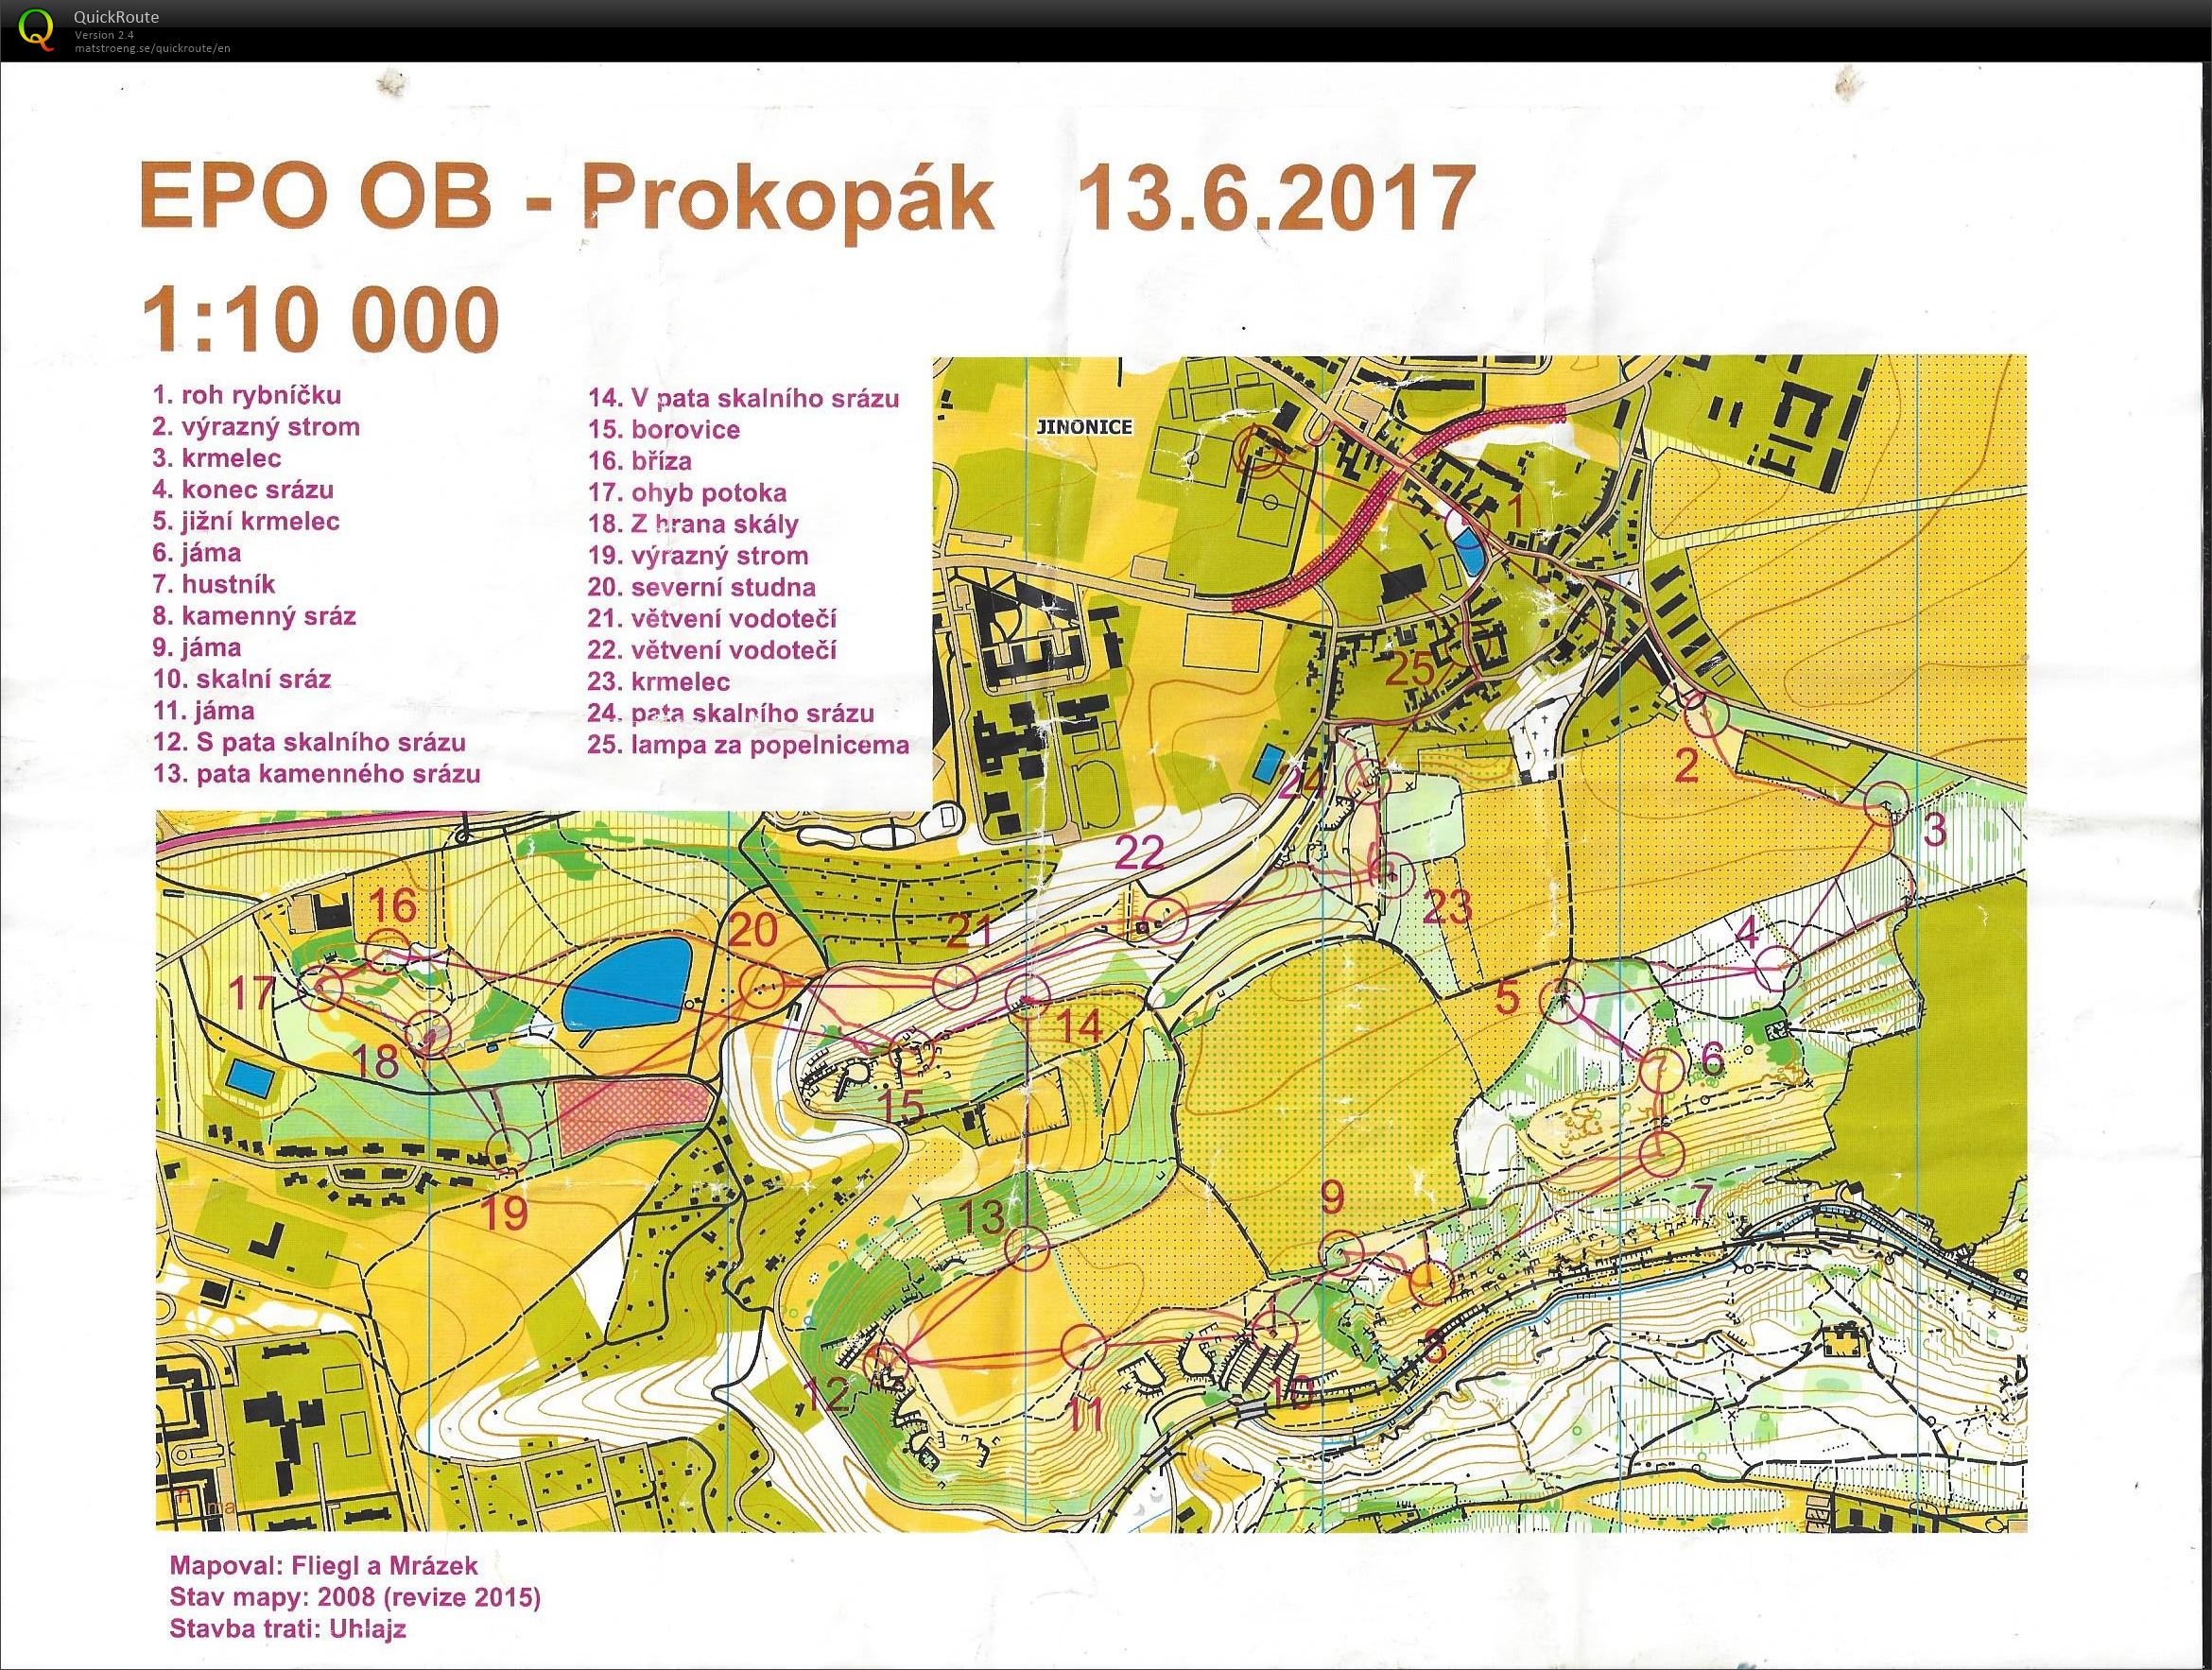 EPO OB - Prokopák (2017-06-13)